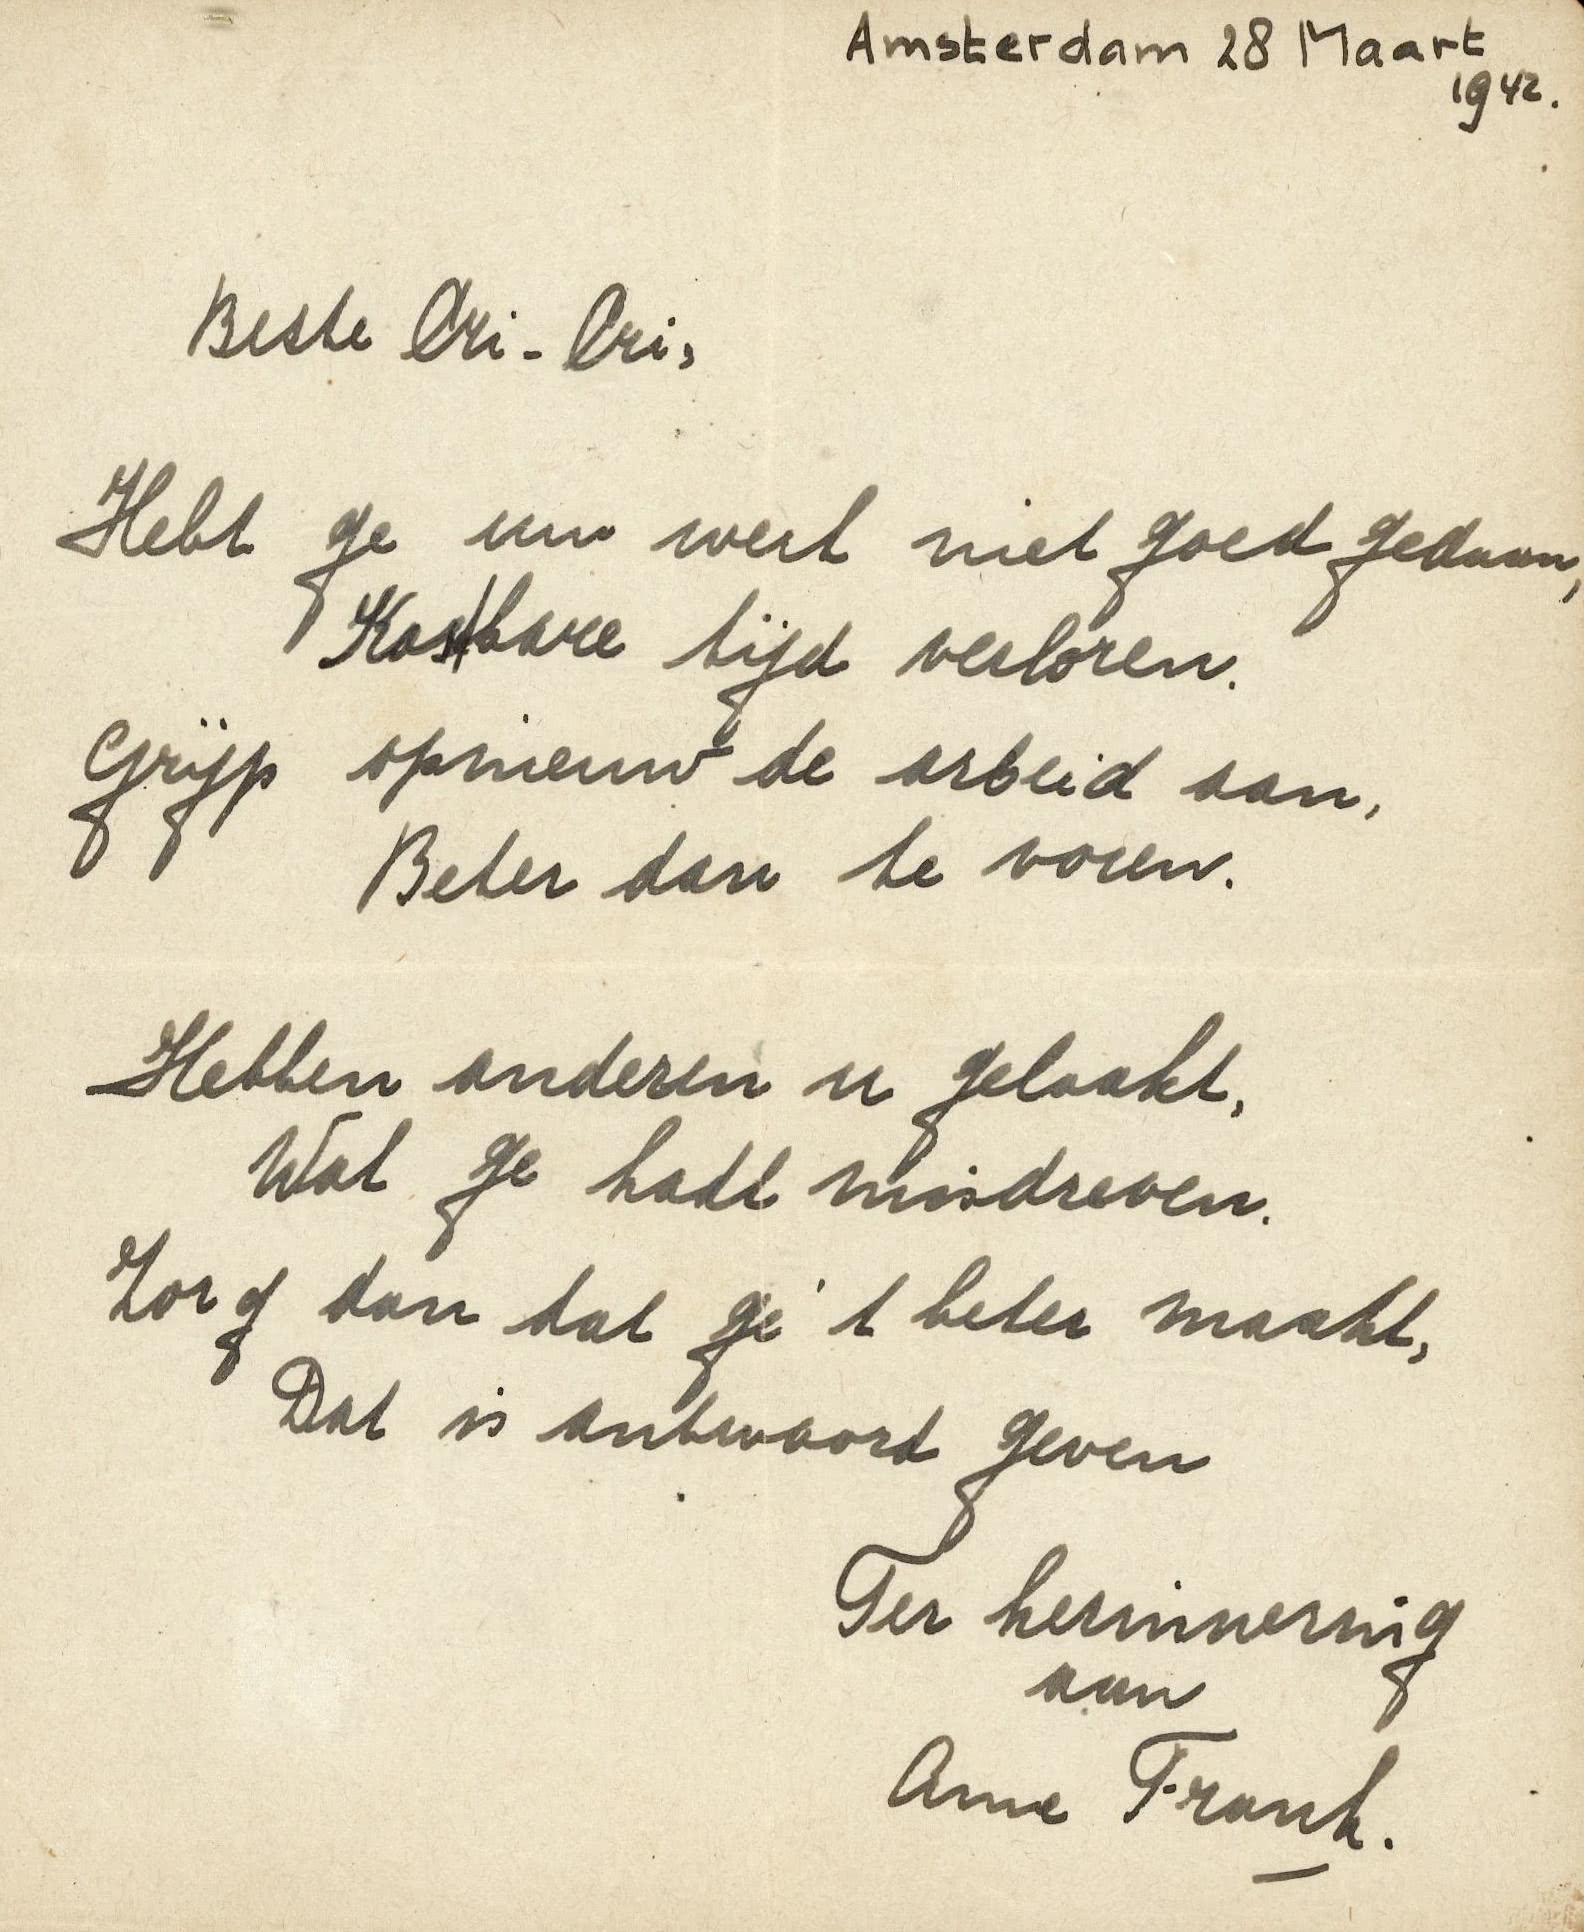 Anne-frank-handwritten-poem